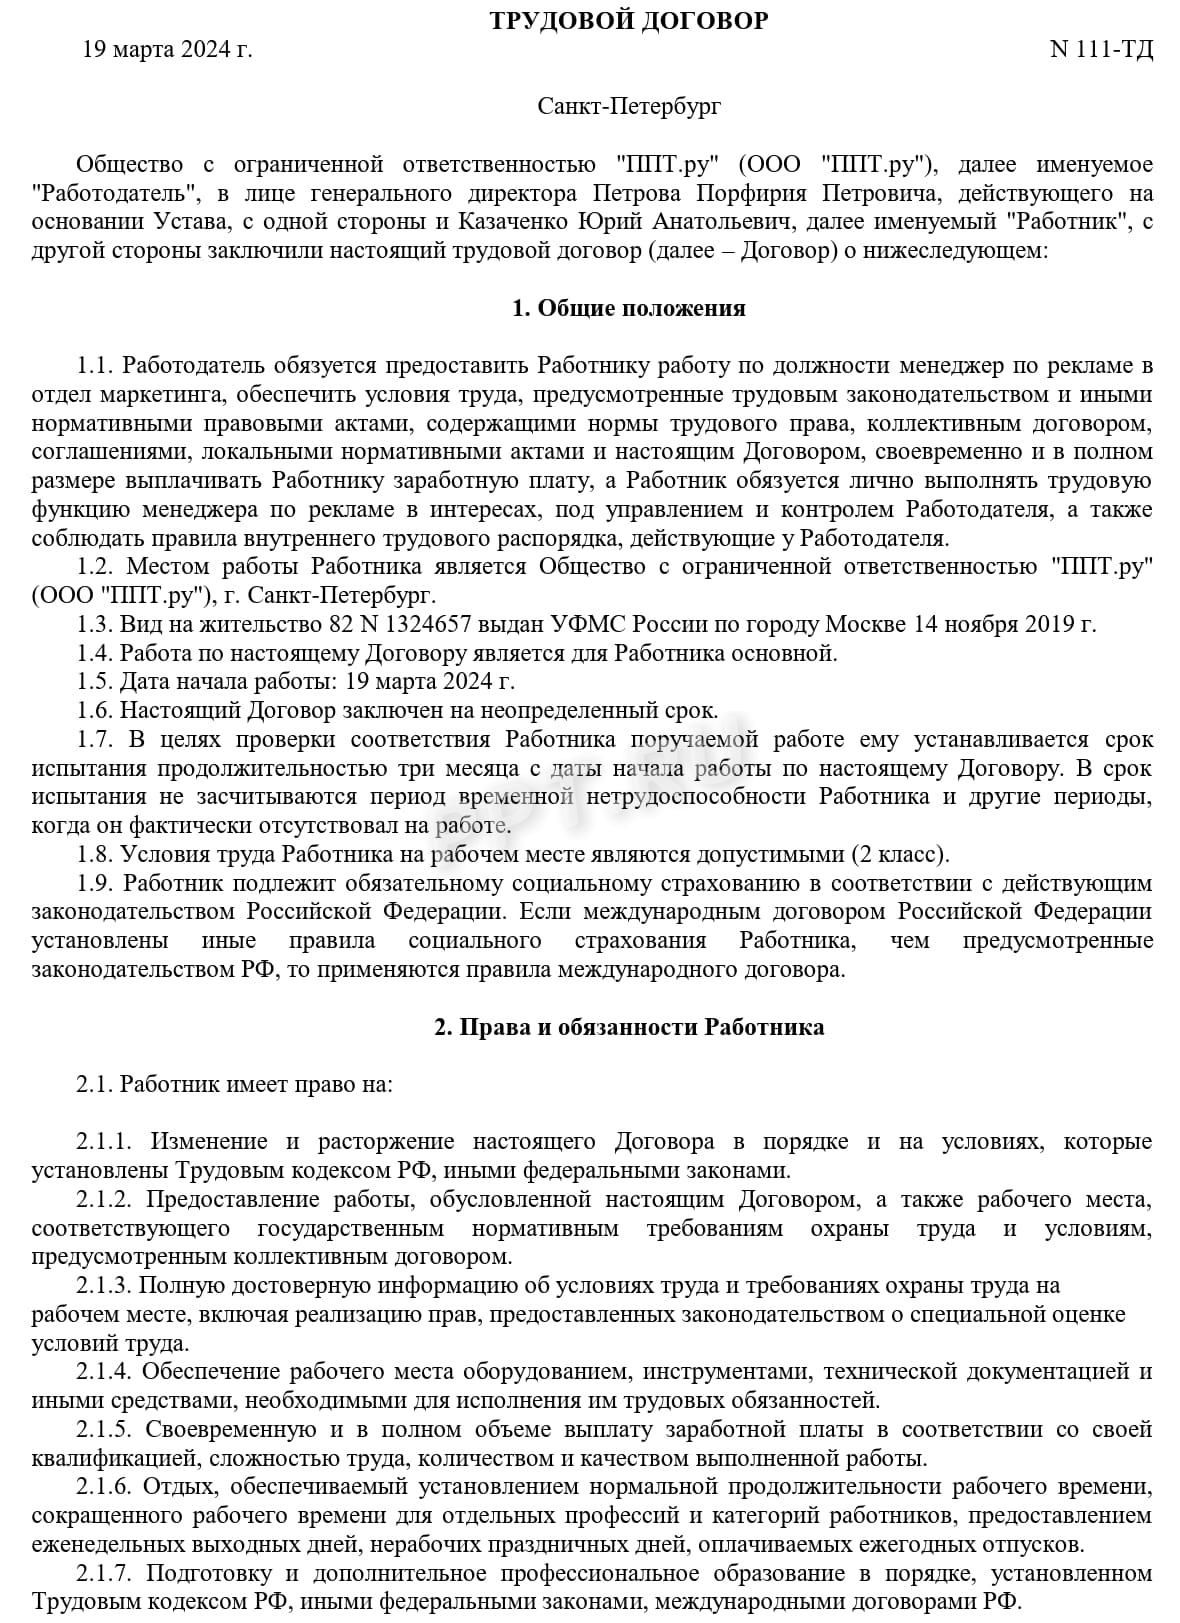 Образец трудового договора с белорусом, стр. 1